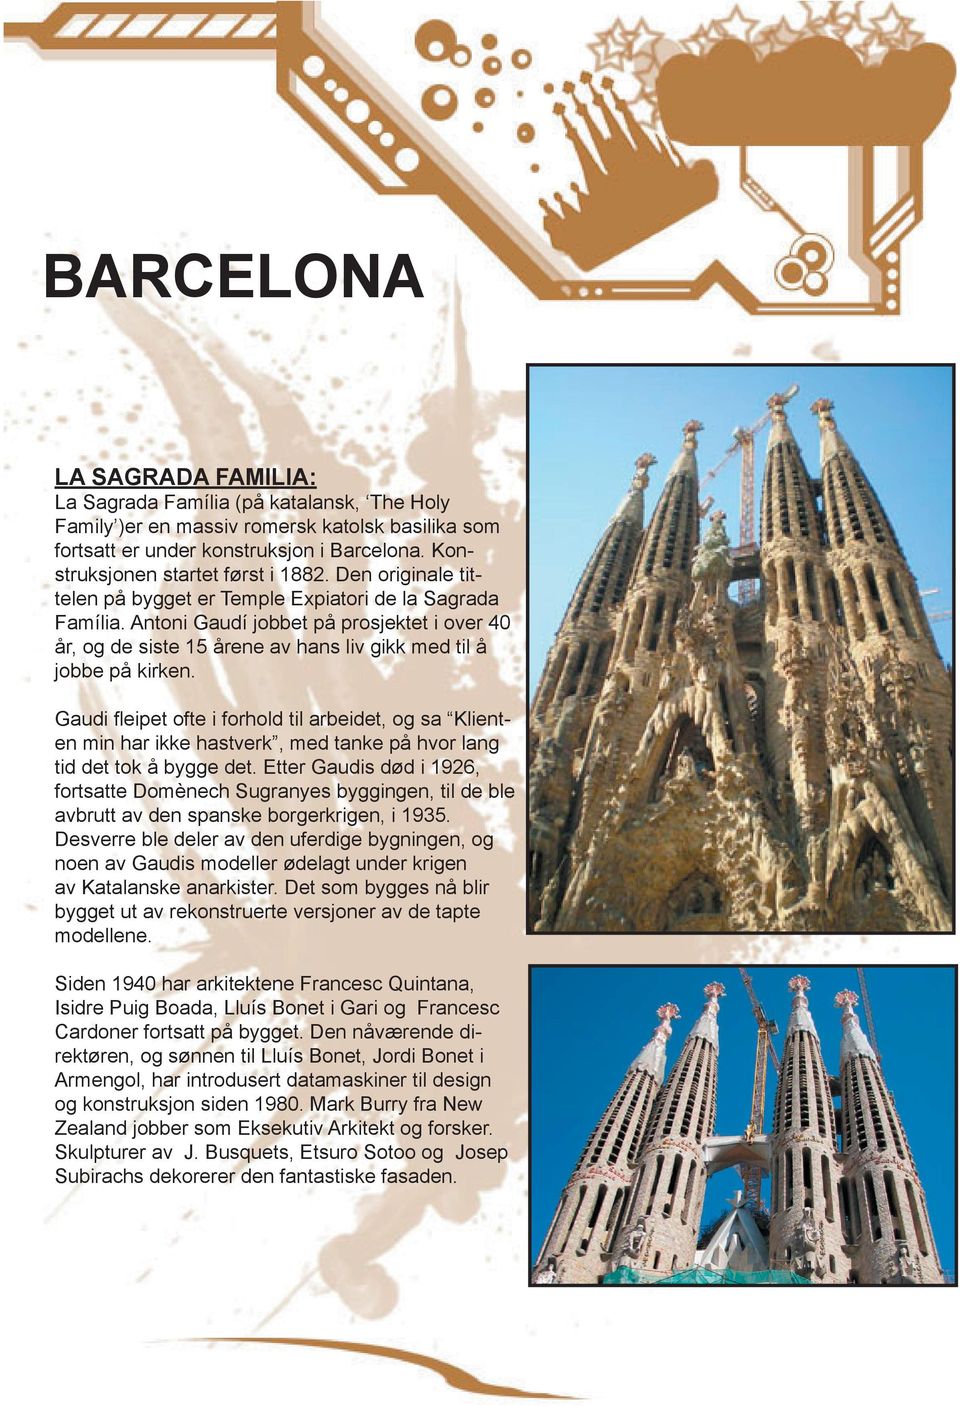 Gaudi fleipet ofte i forhold til arbeidet, og sa Klienten min har ikke hastverk, med tanke på hvor lang tid det tok å bygge det.